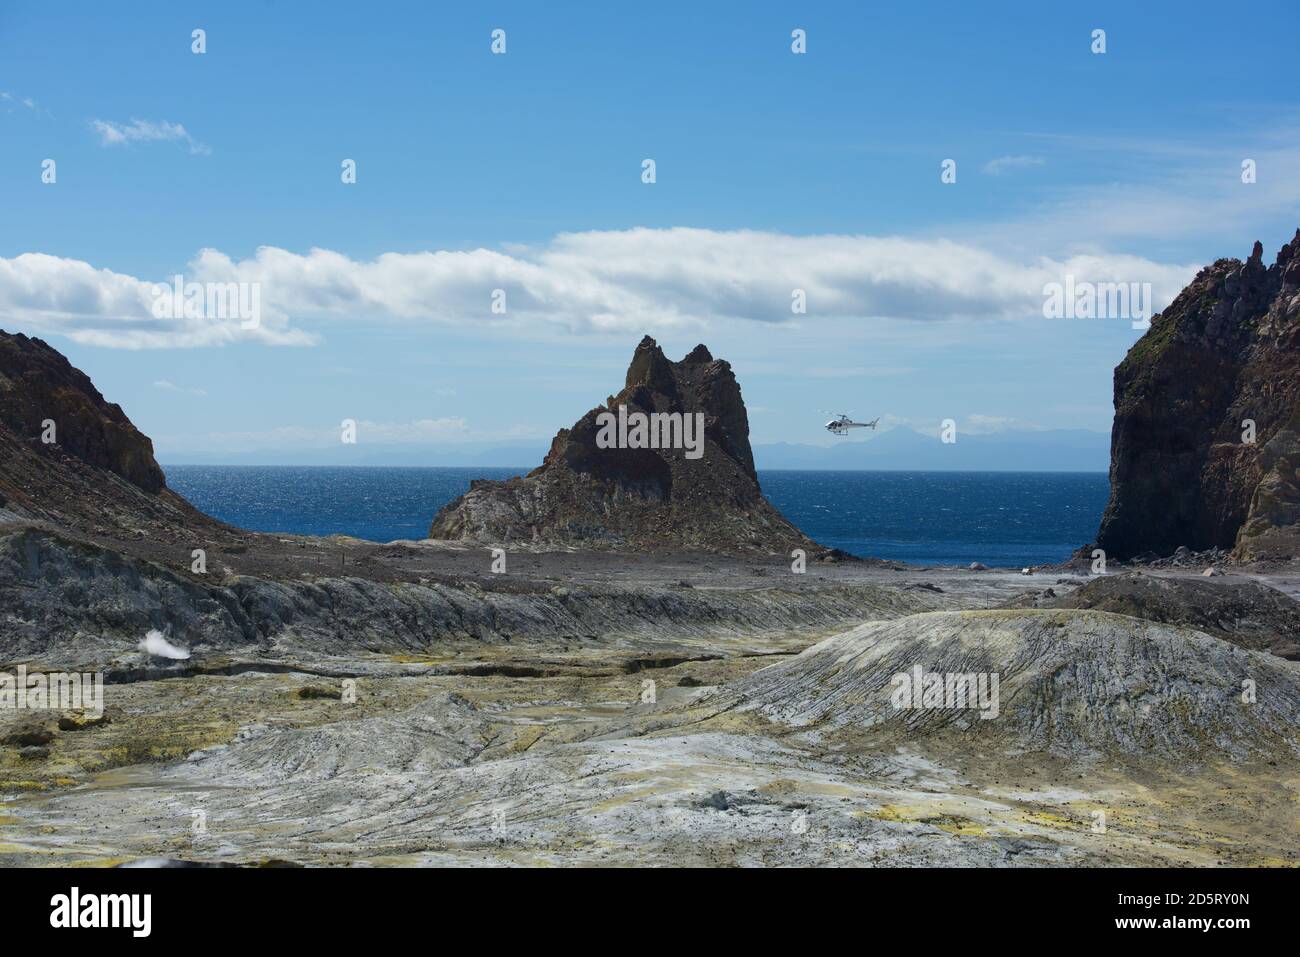 Vue sur White Island (Whakaari) un stratovolcan andesite actif, situé à 48 km Depuis la côte est de l'île du Nord de New Zealand.volcan actif i Banque D'Images